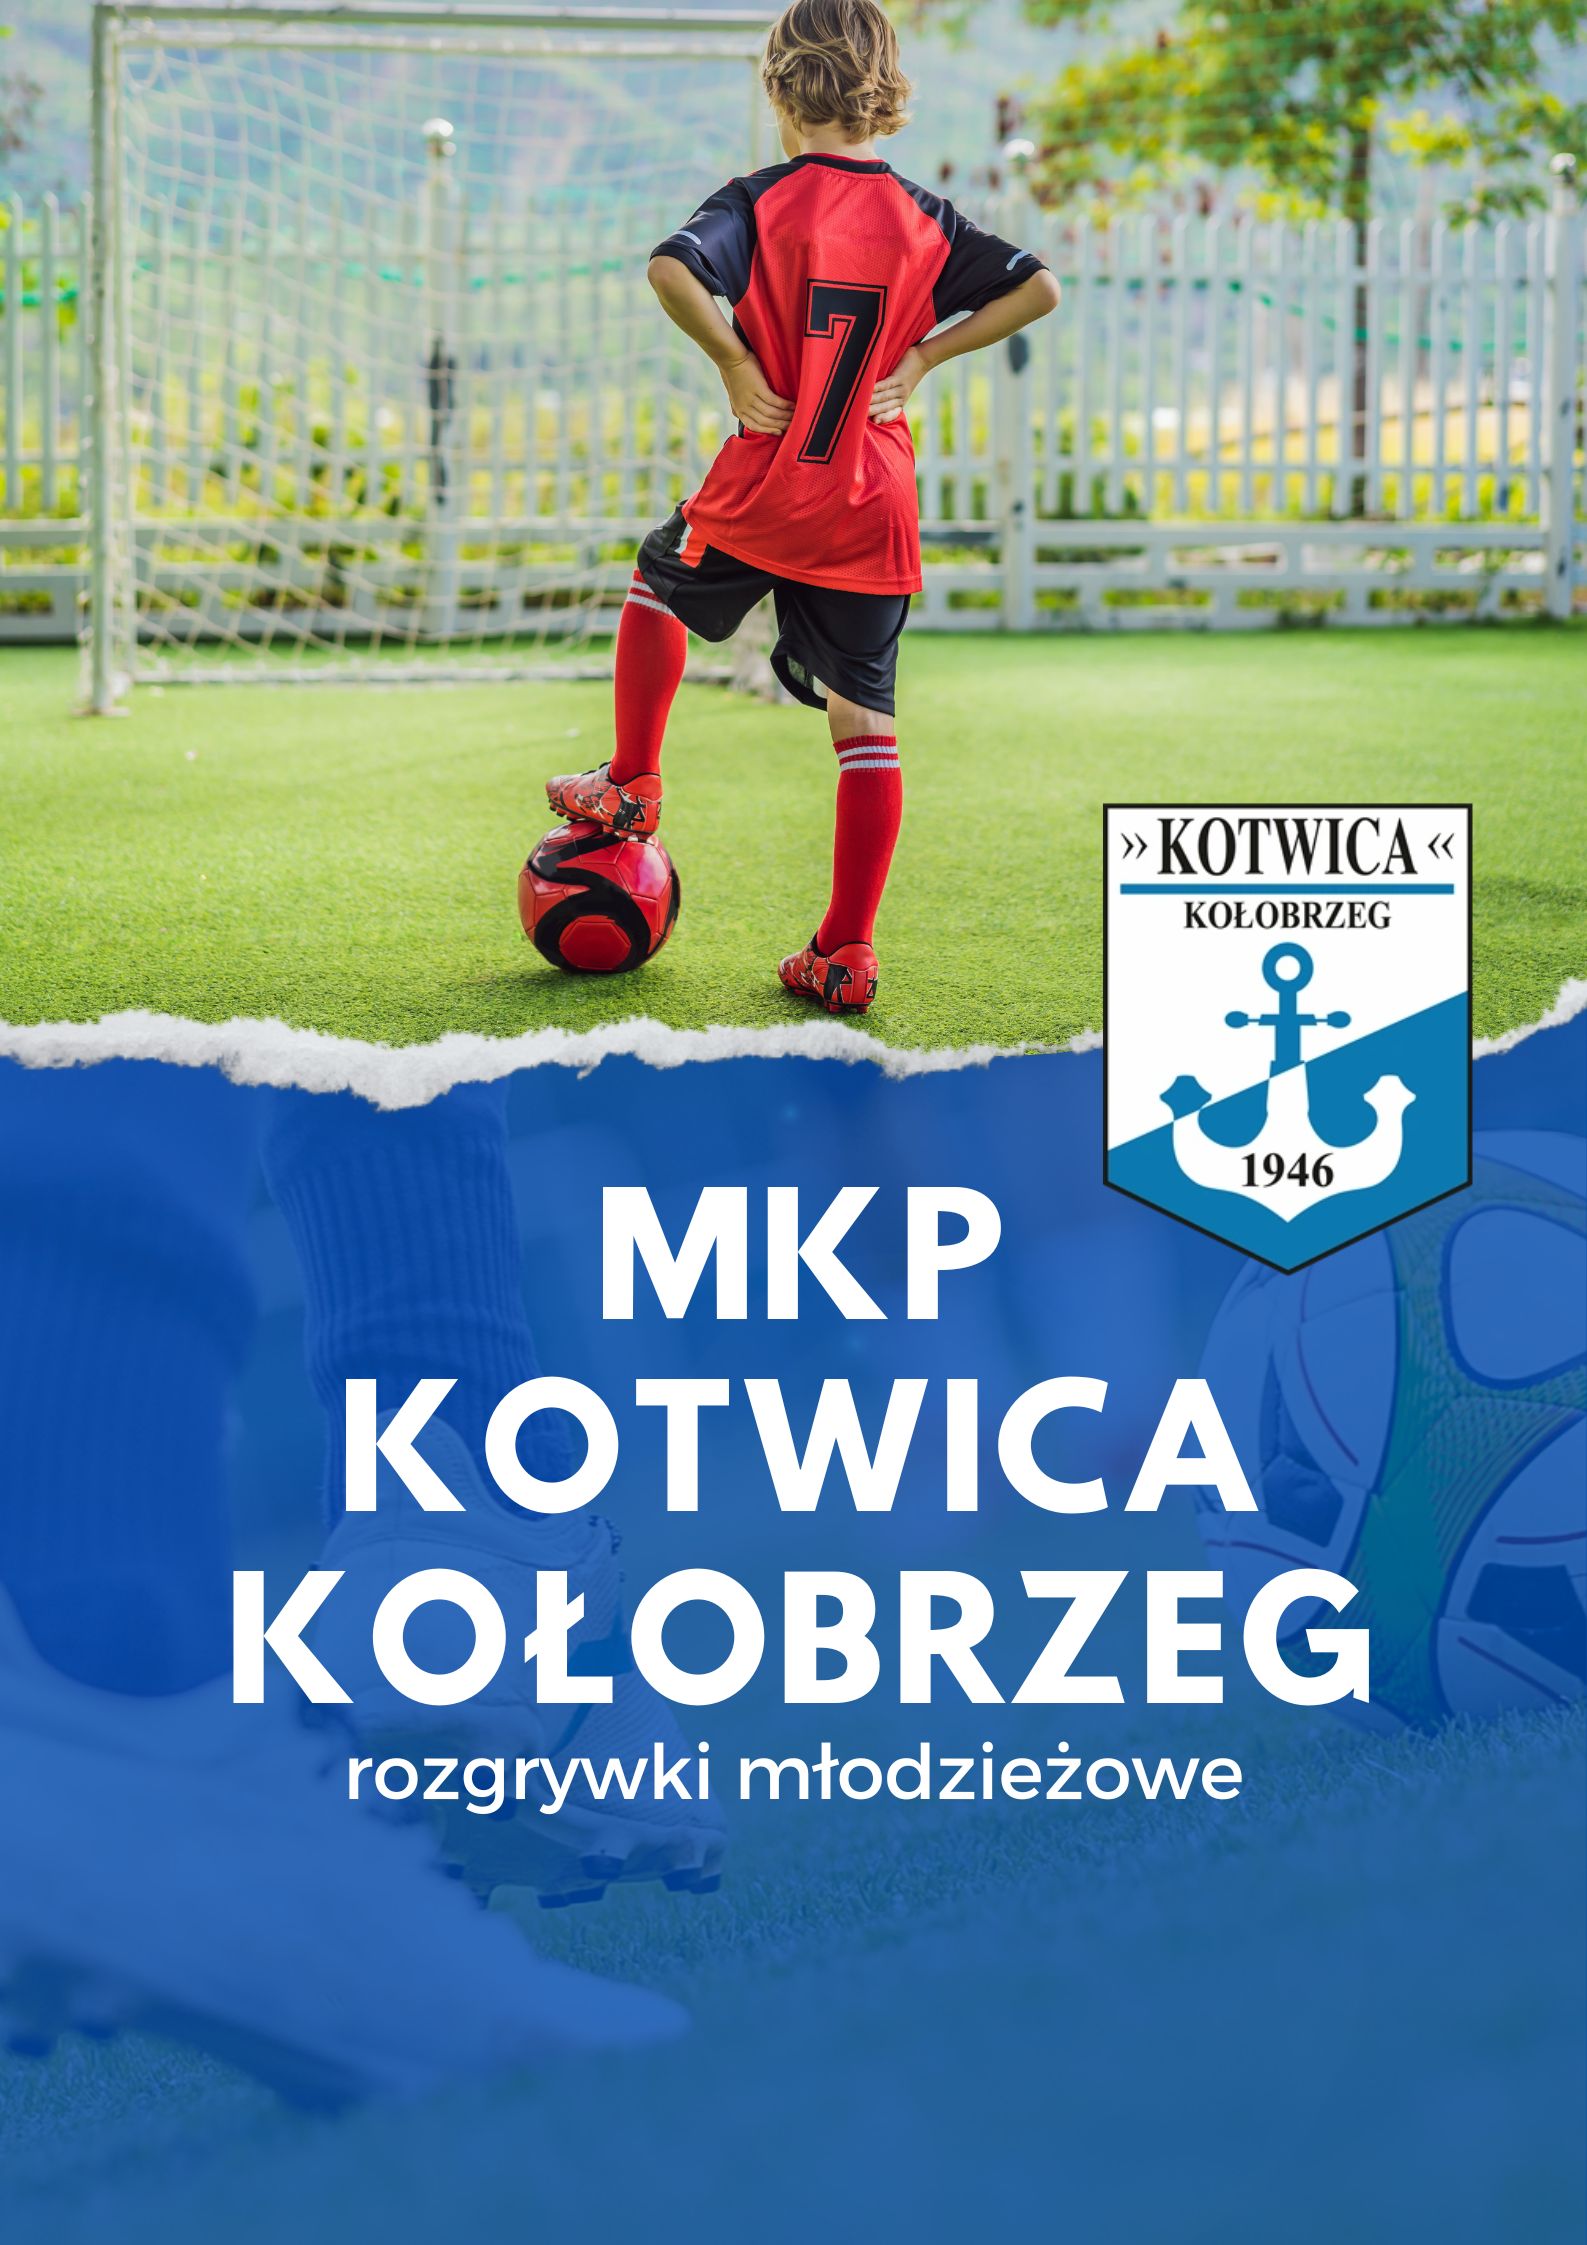 Rozgrywki młodzieżowe - MKP Kotwica Kołobrzeg